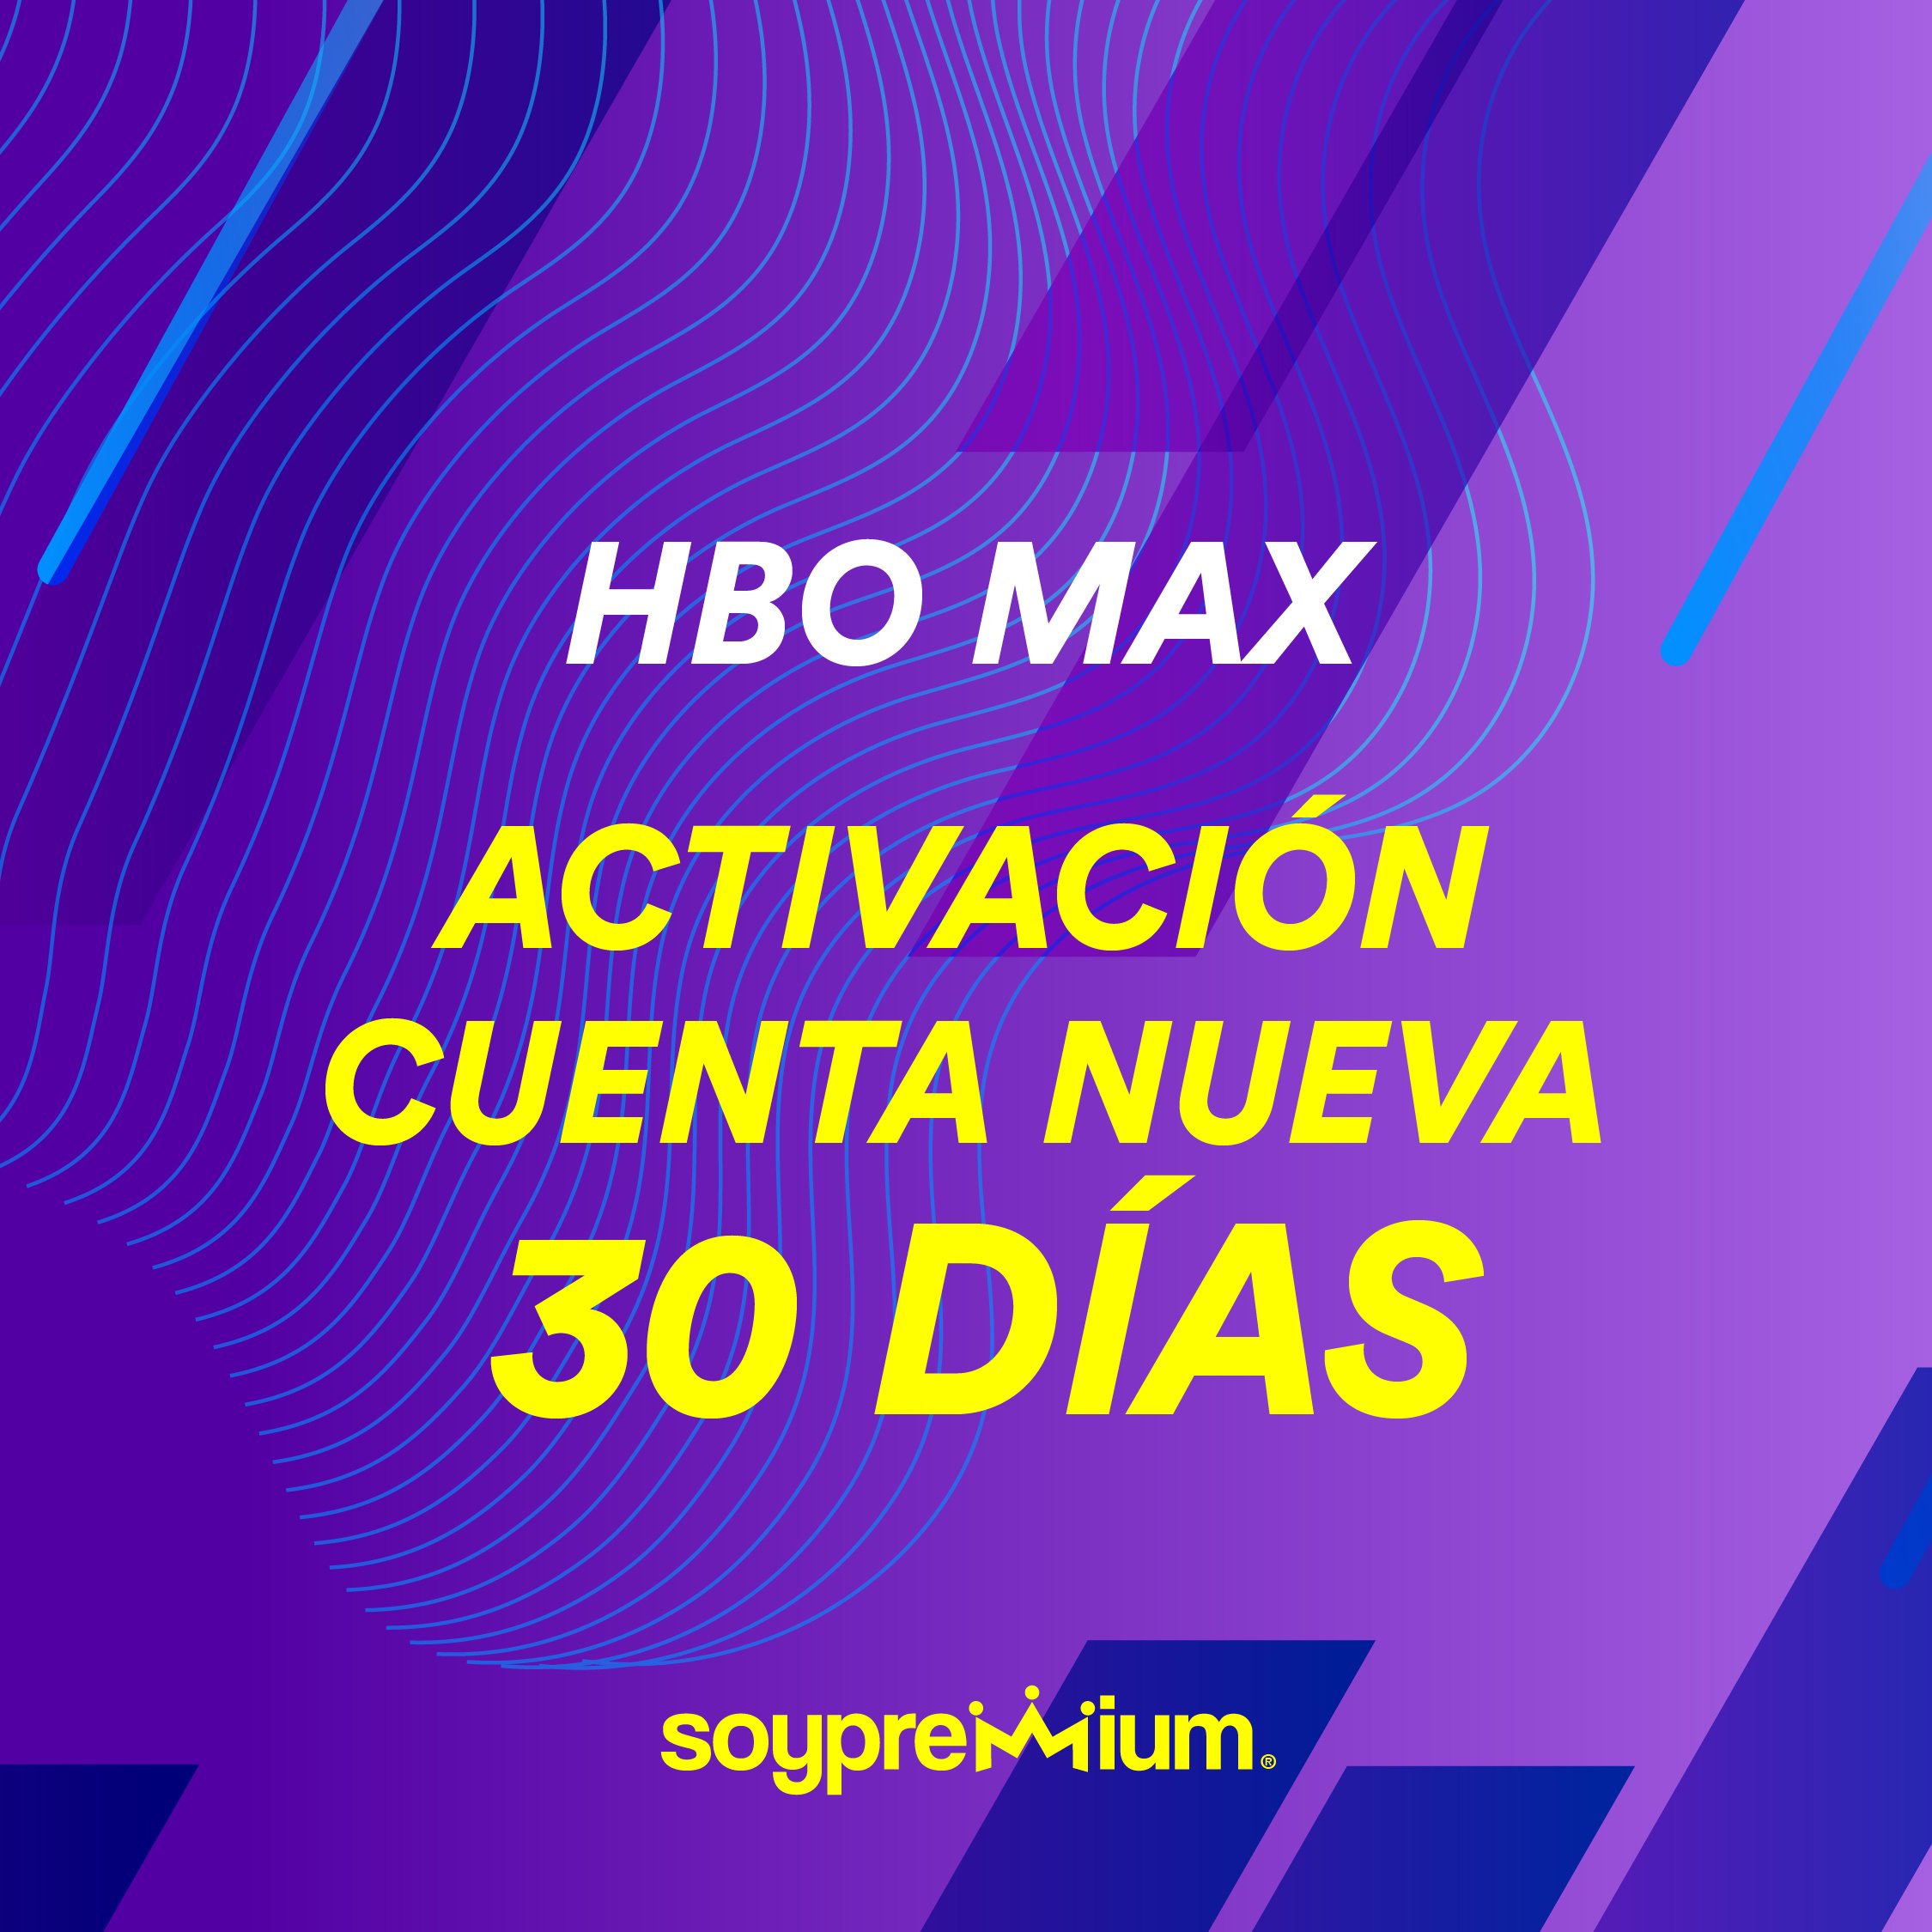 Pago HBO MAX